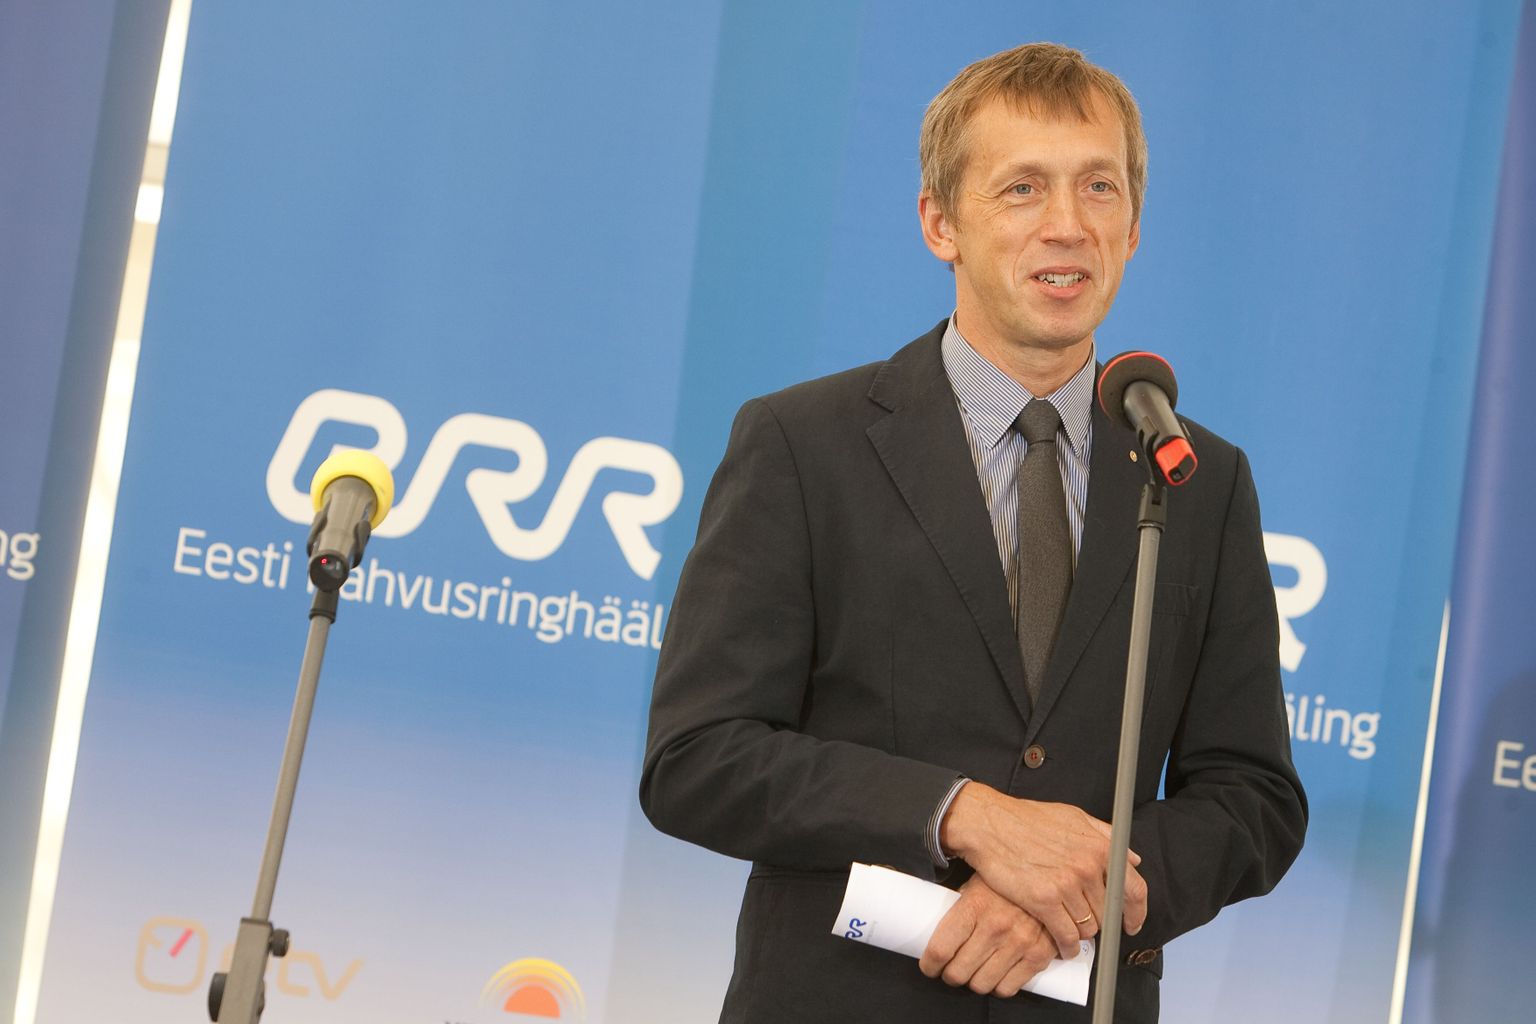 Eesti Rahvusringhäälingu juht Margus Allikmaa